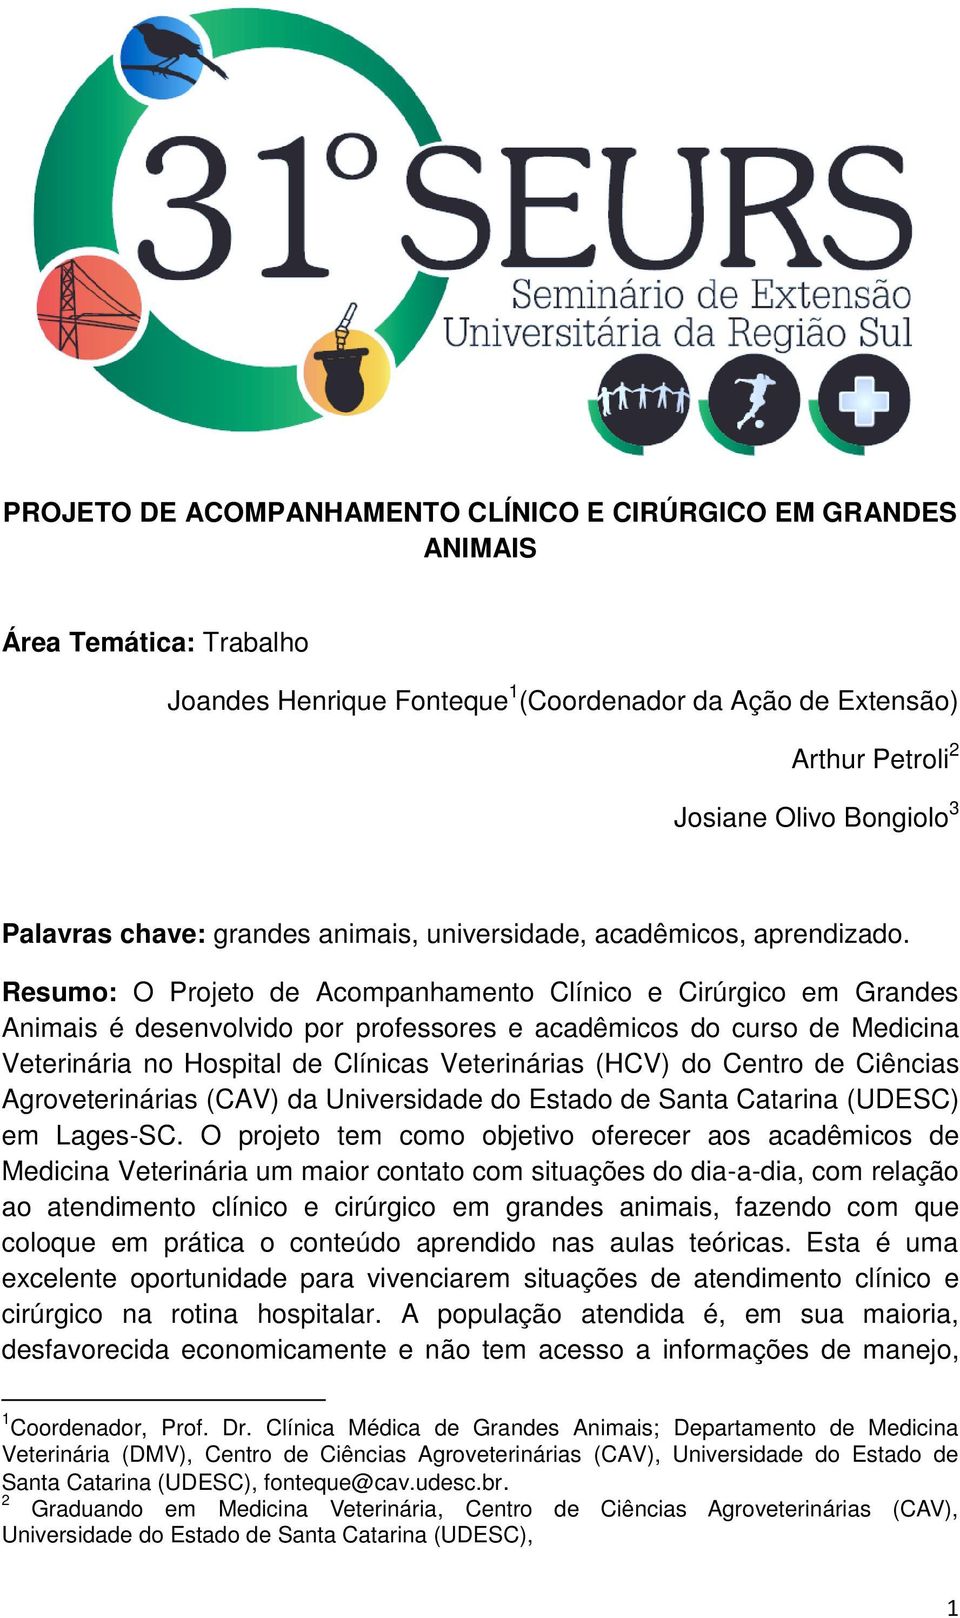 Resumo: O Projeto de Acompanhamento Clínico e Cirúrgico em Grandes Animais é desenvolvido por professores e acadêmicos do curso de Medicina Veterinária no Hospital de Clínicas Veterinárias (HCV) do